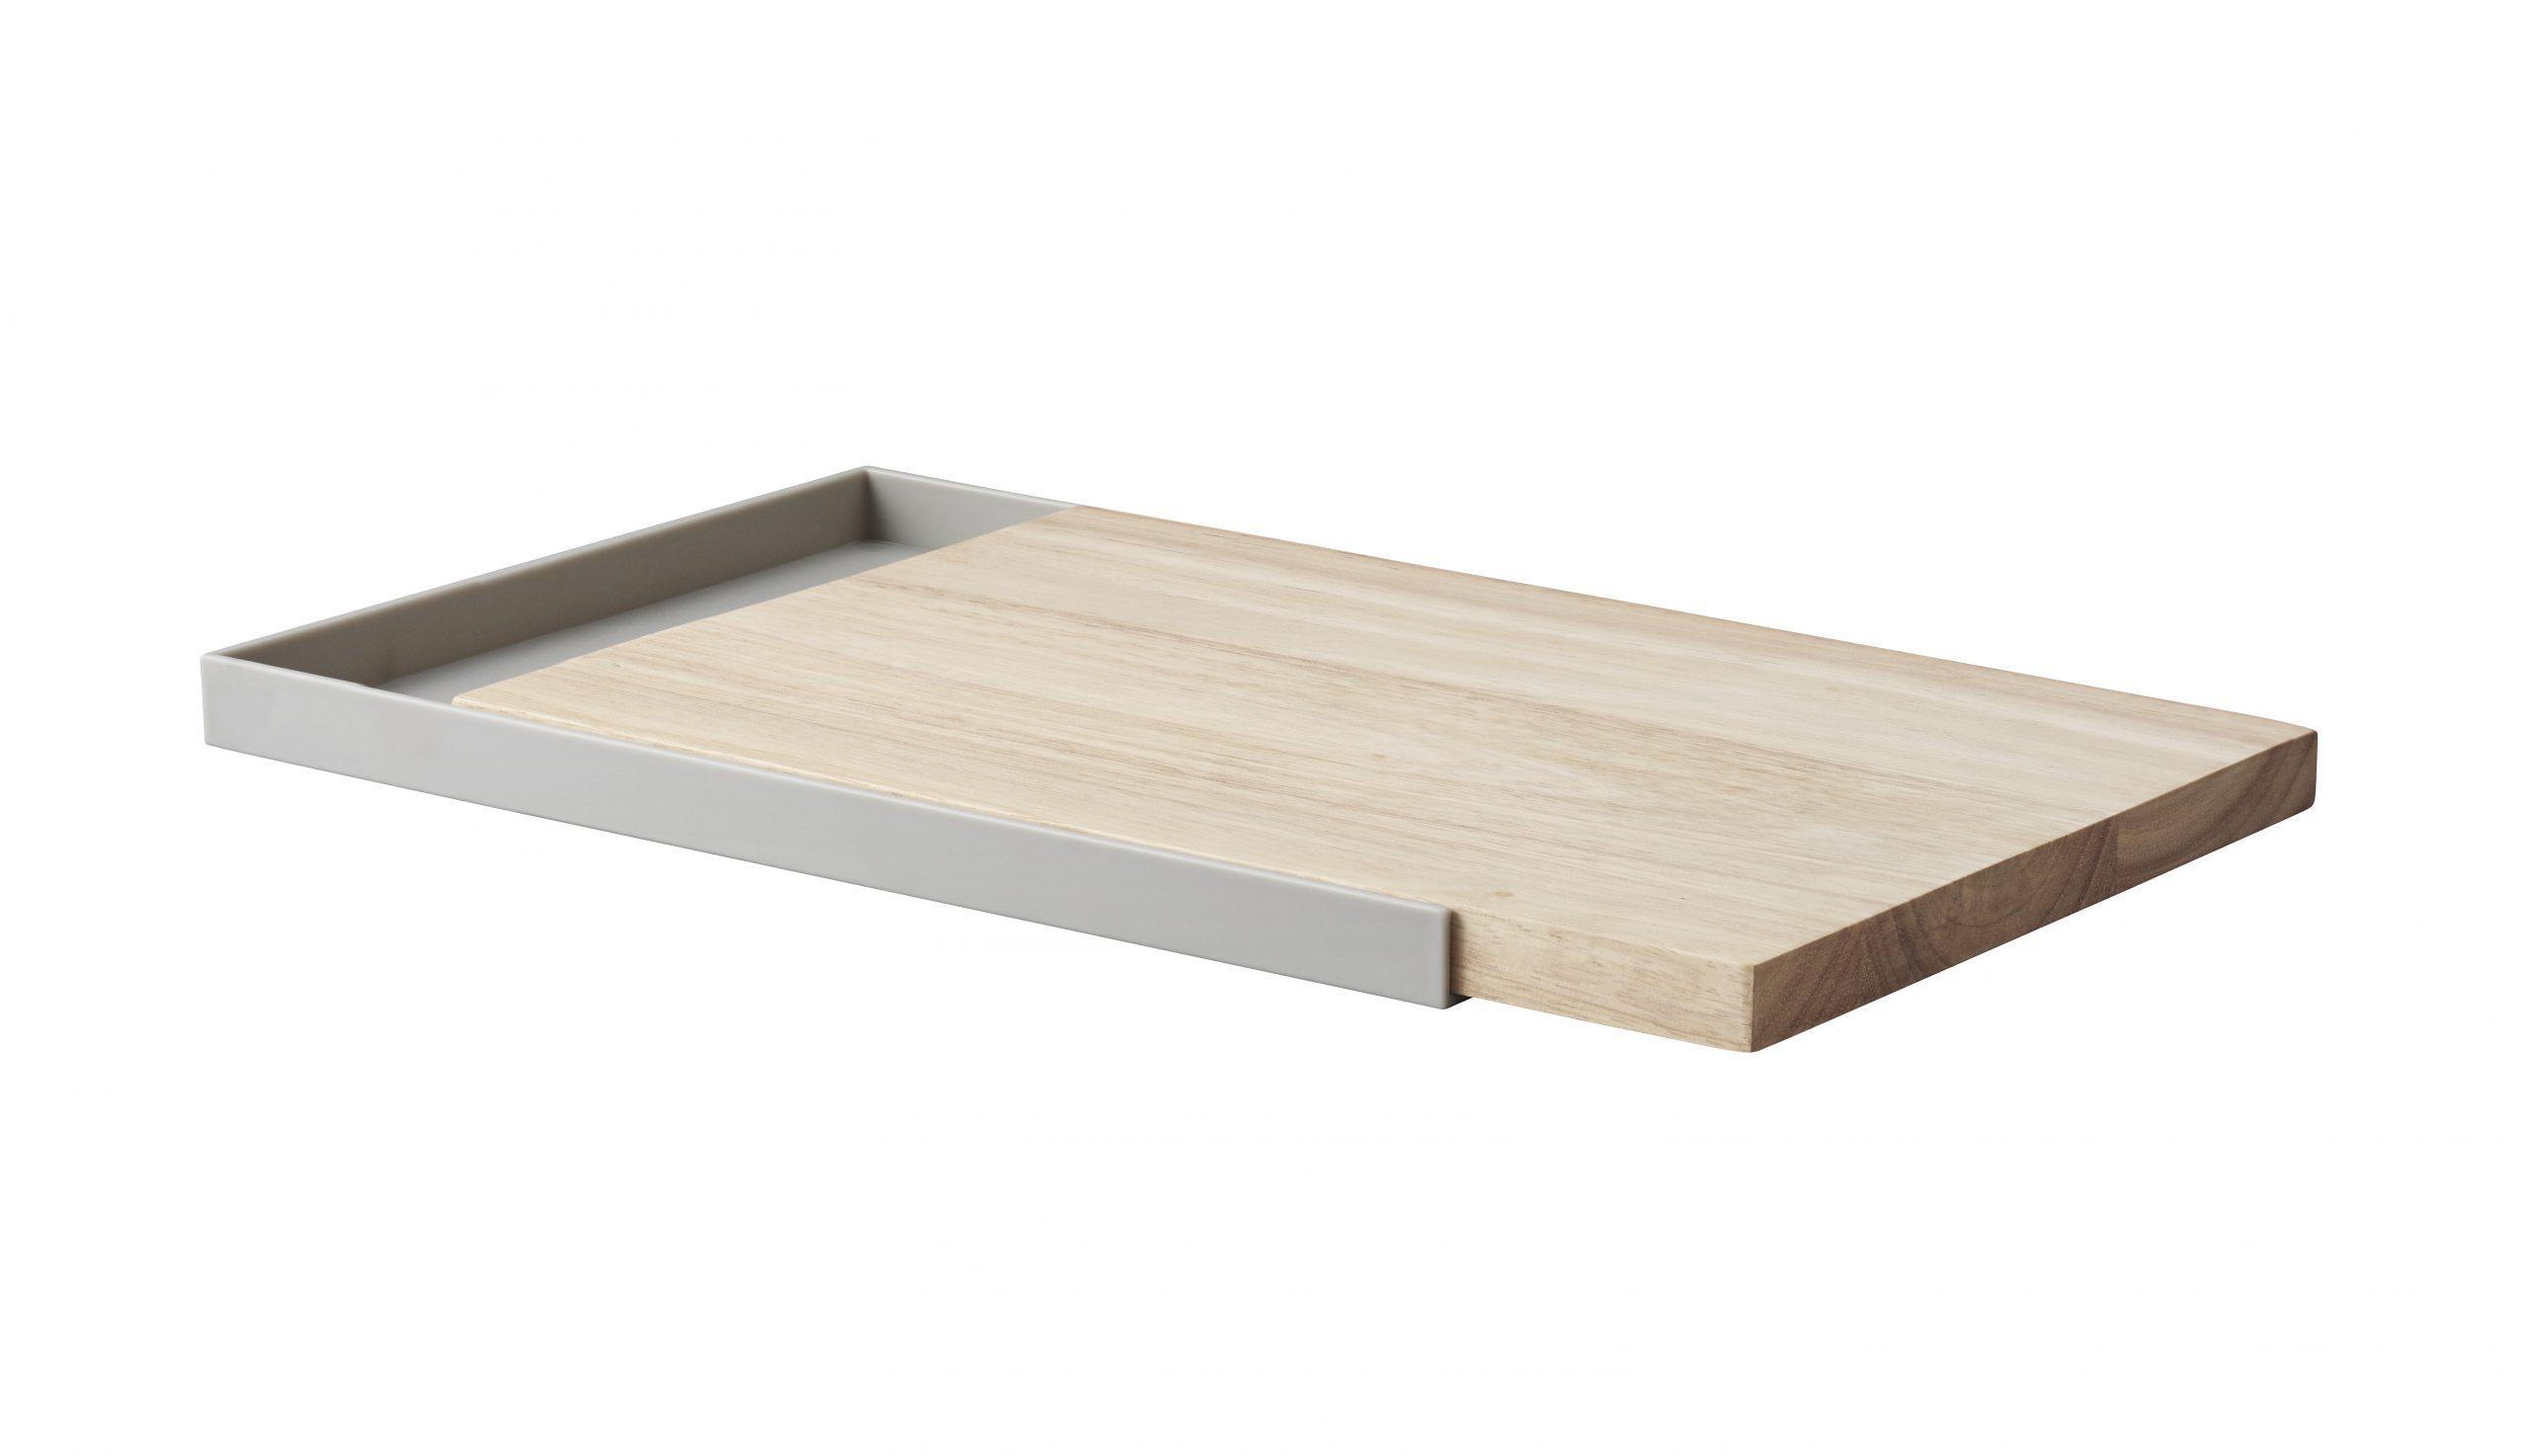 Frame cutting board designed by Debiasi Sandri for RigTig